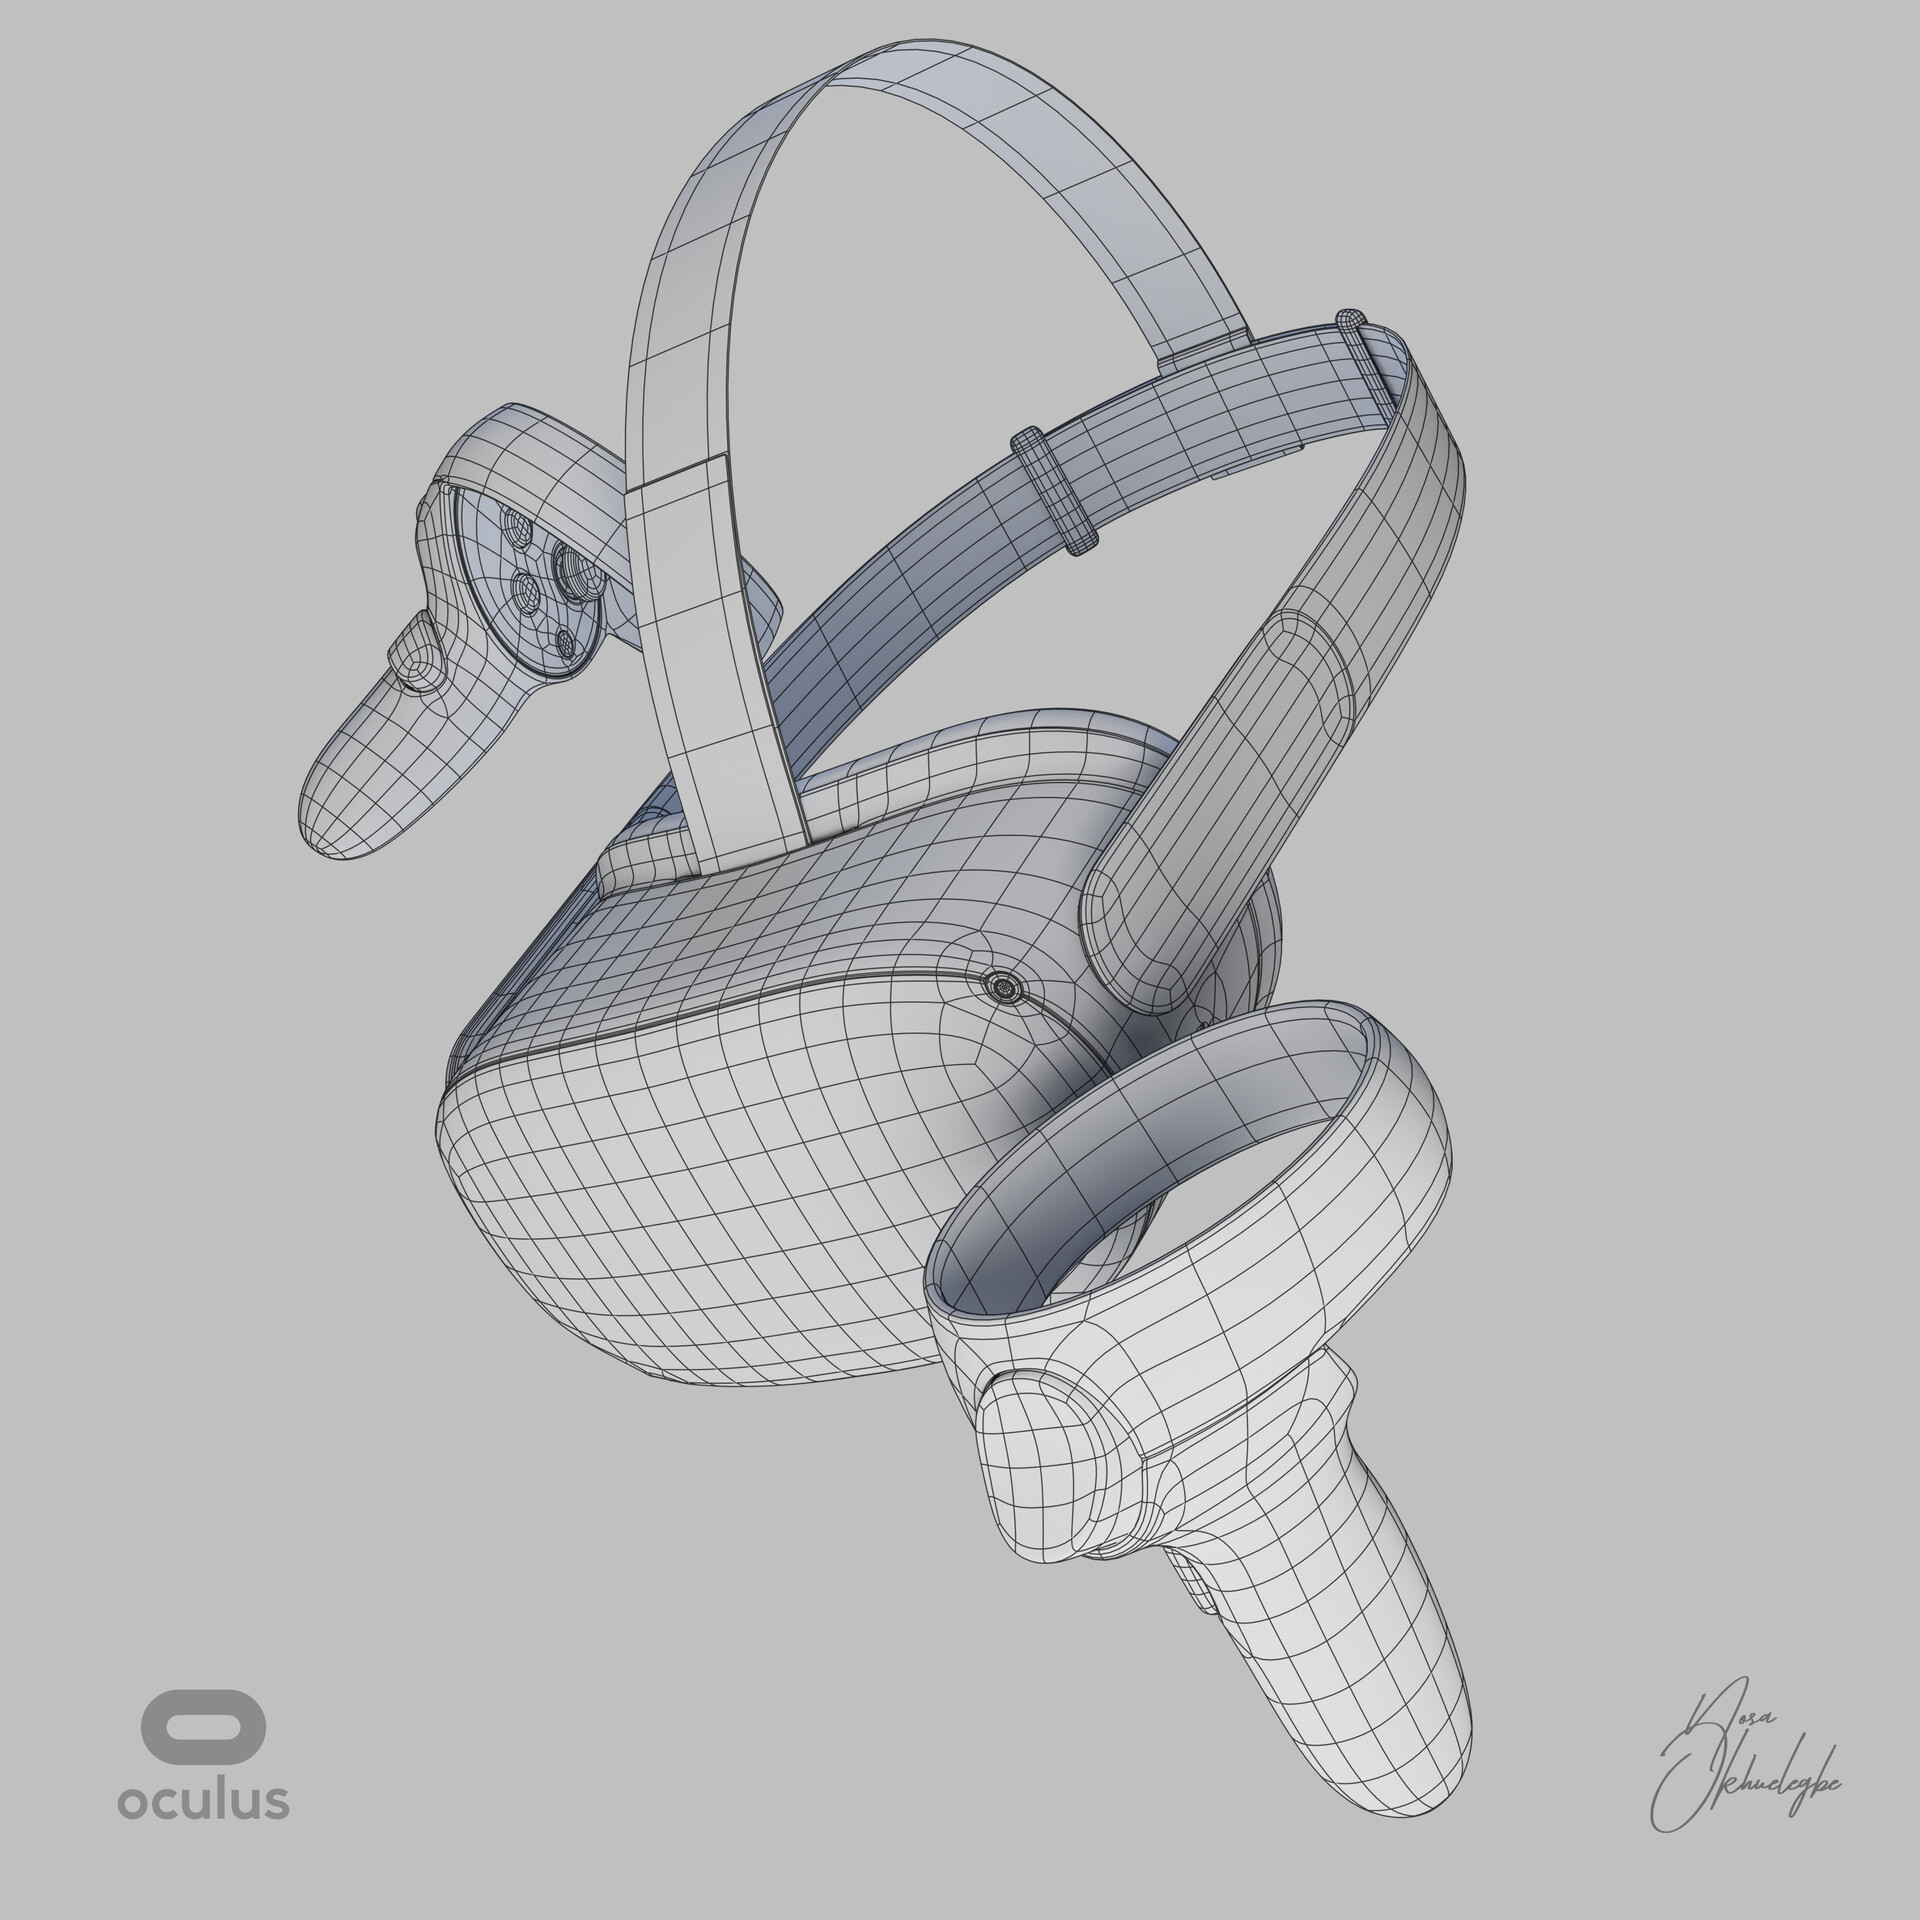 Gravity Sketch's 3D Modeling Software Lets You Design In VR | Digital Trends